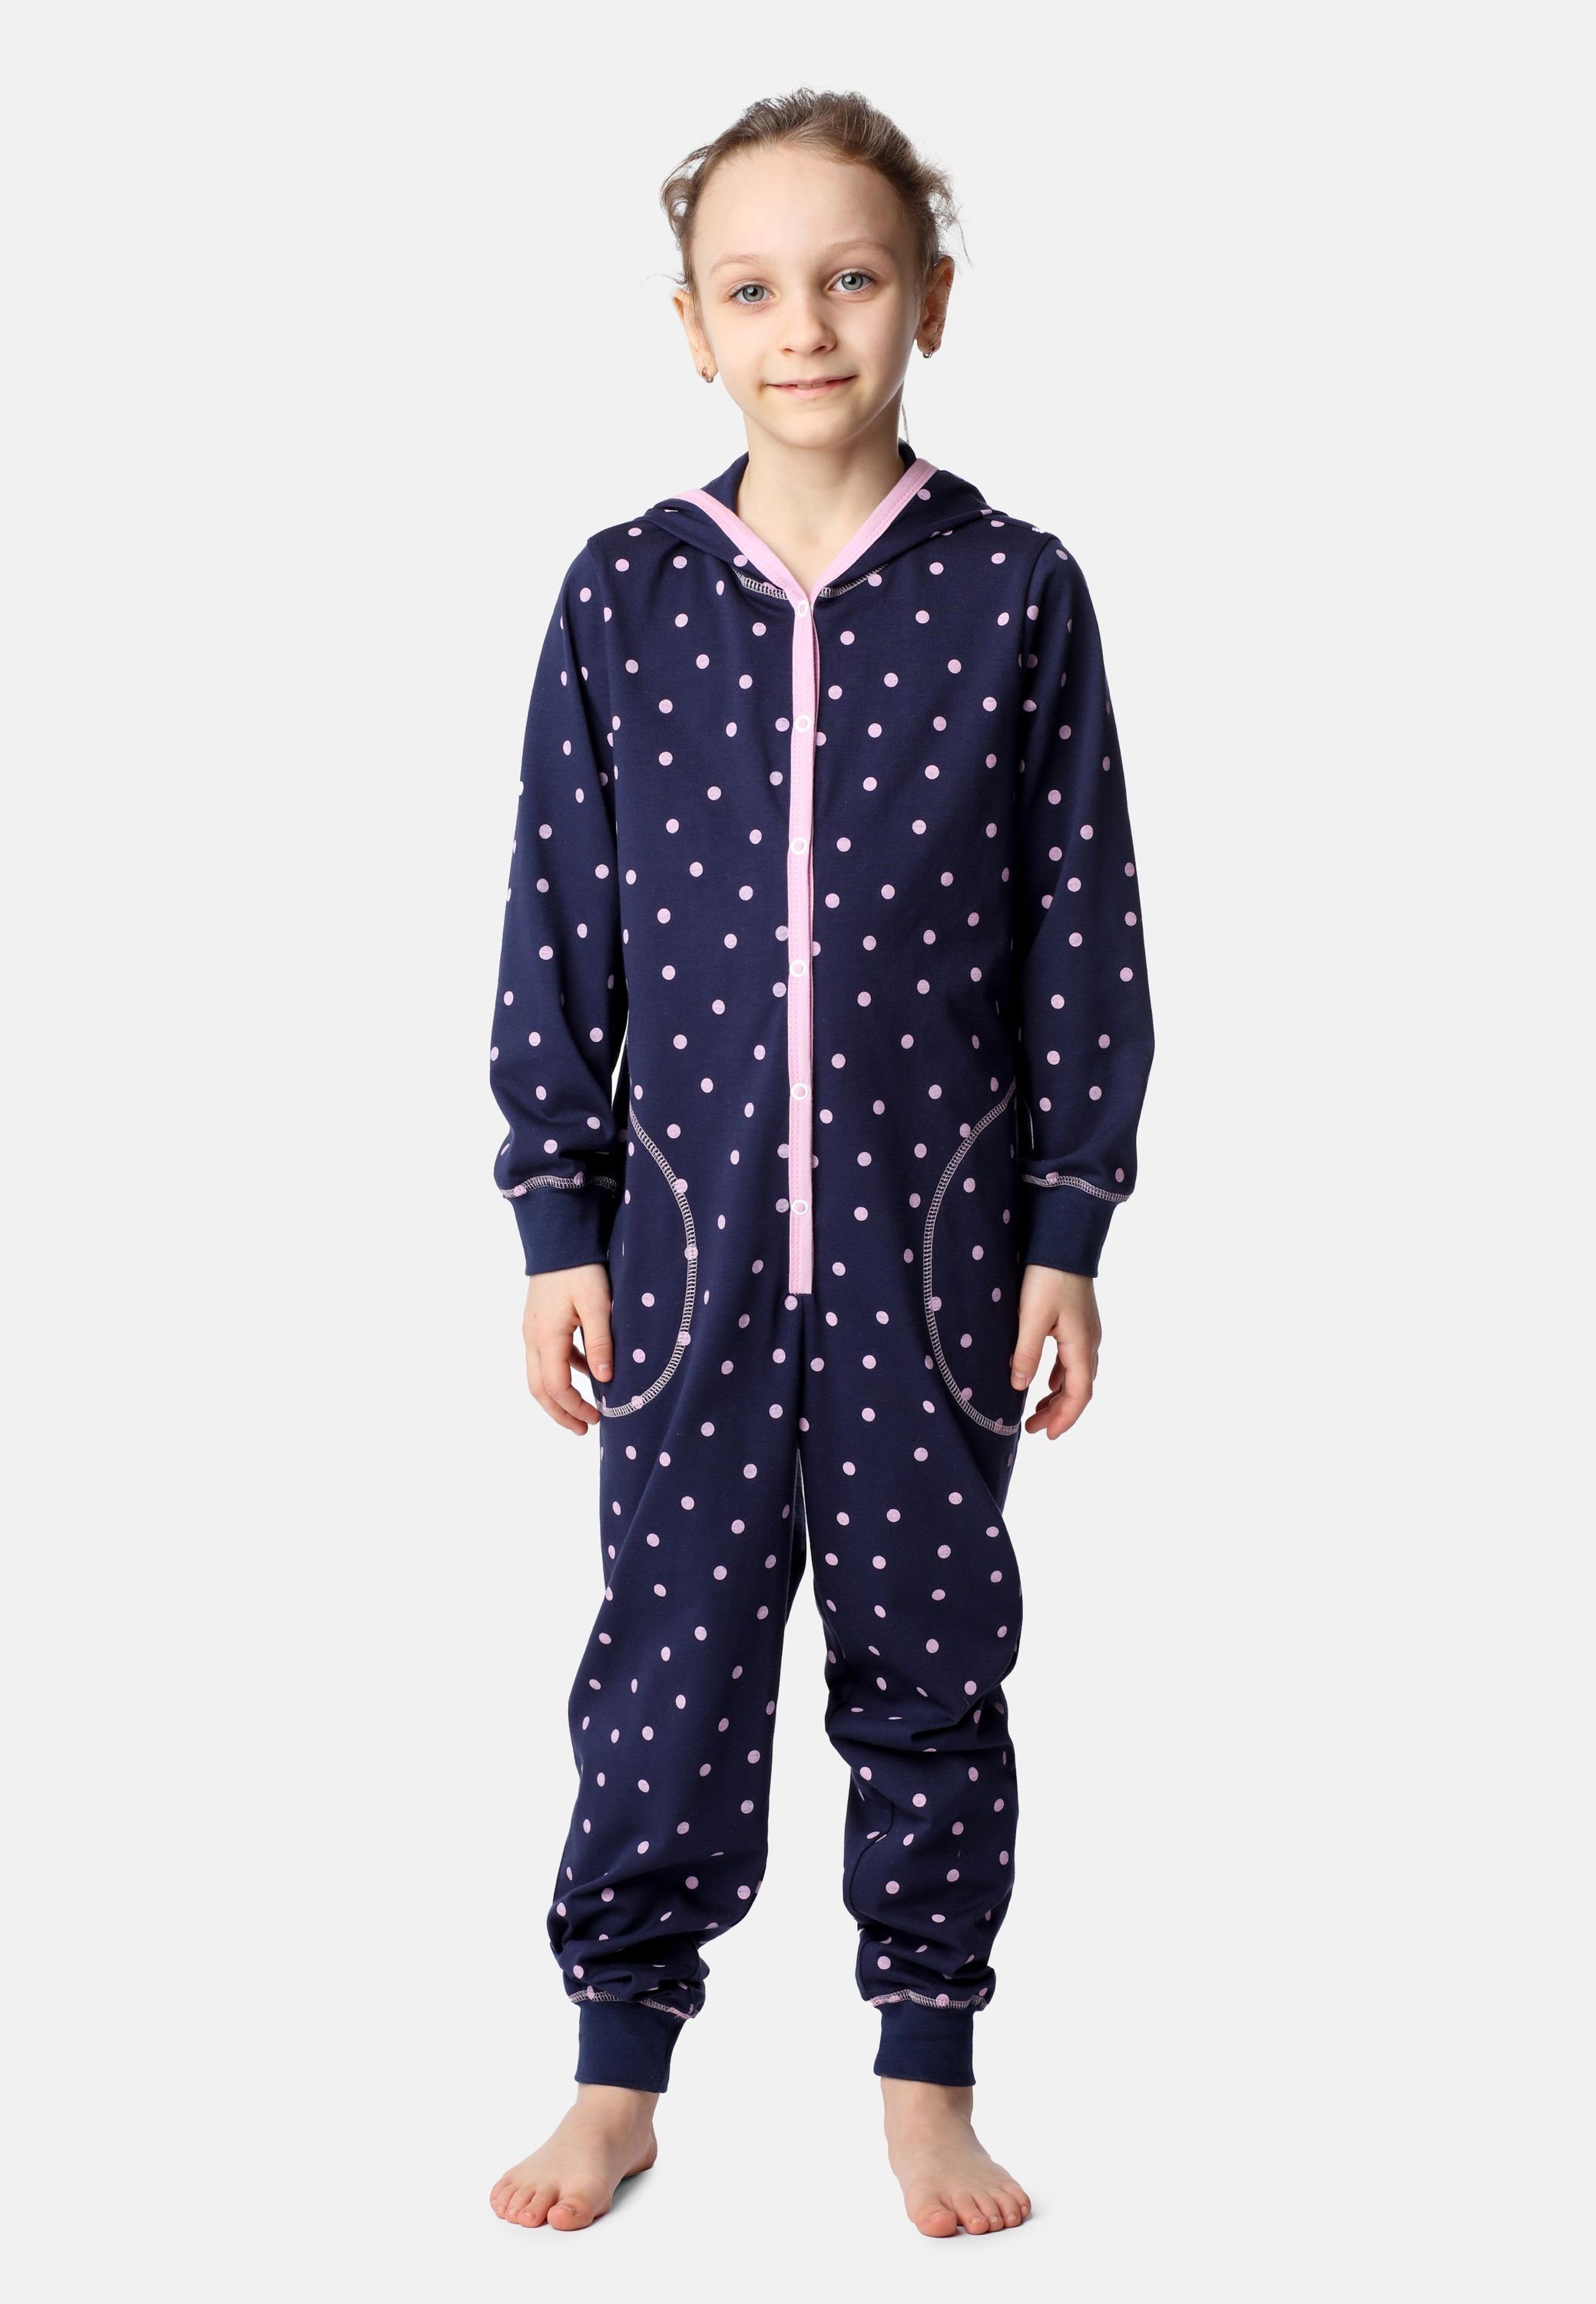 Mädchen Kapuze Merry Punkte Marineblau Schlafanzug Schlafoverall Rosa MS10-223 mit Style